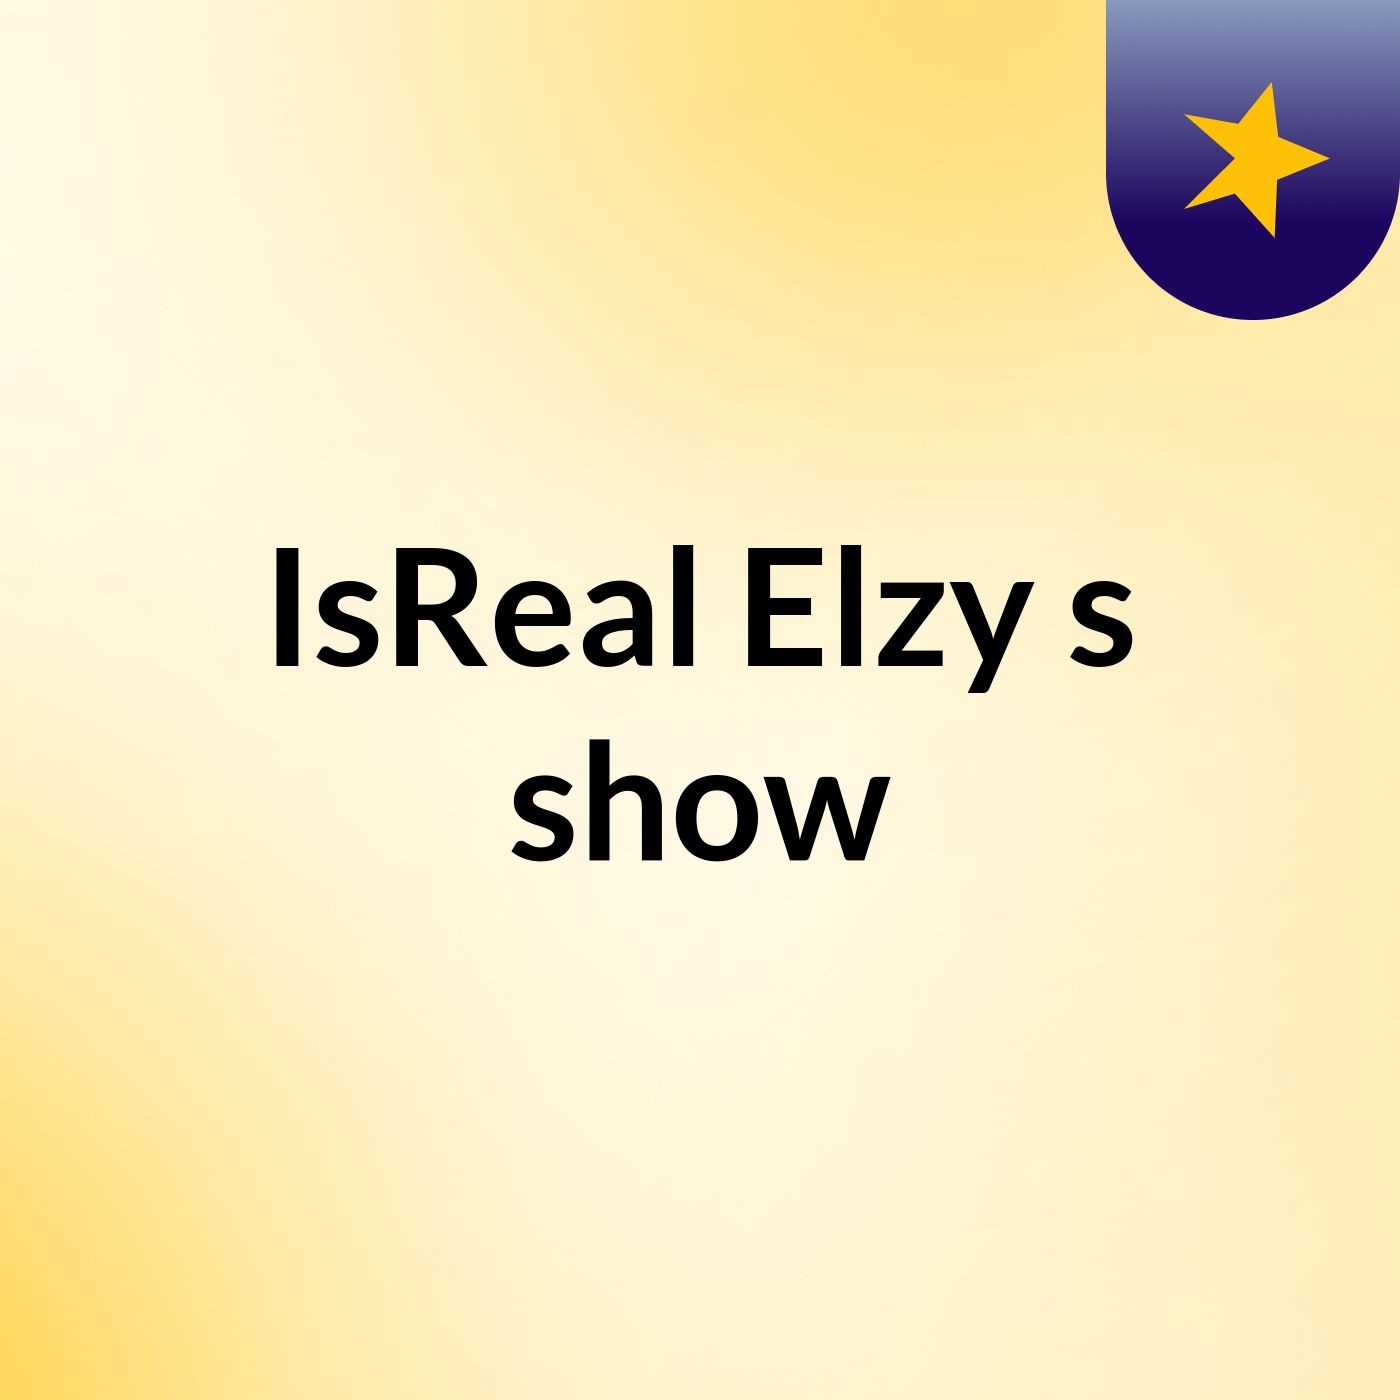 Episode 6 - IsReal Elzy's show